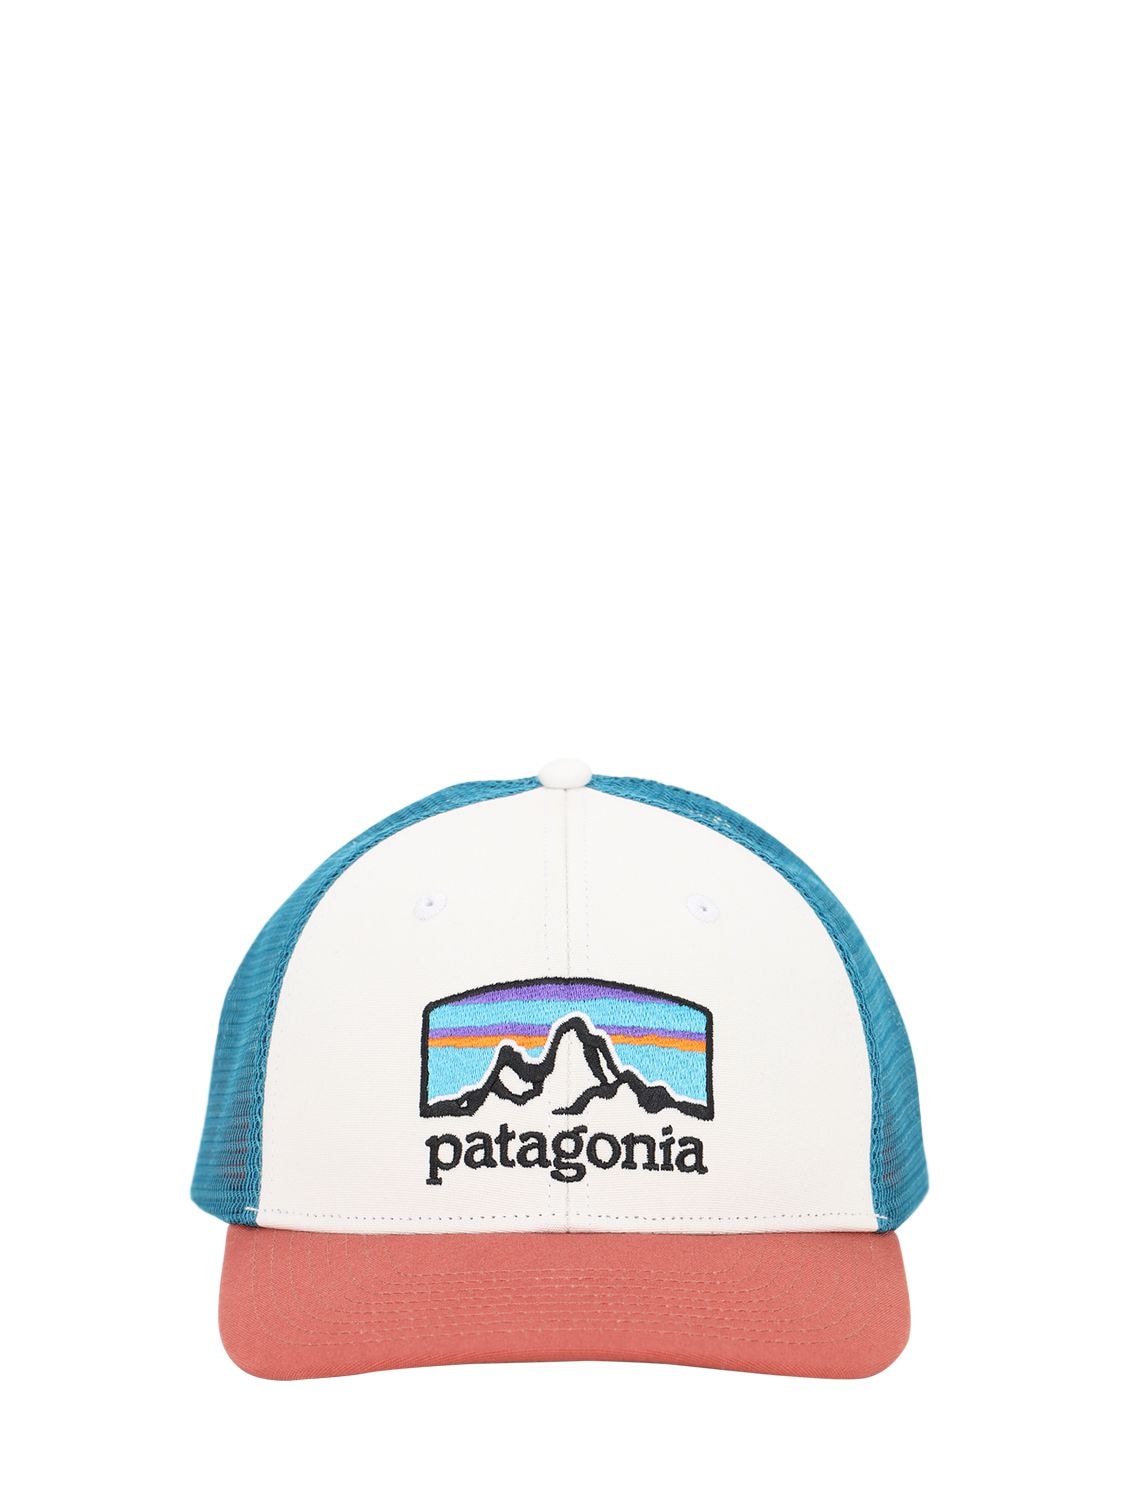 PATAGONIA FITZ ROY SCOPE TRUCKER HAT,71I0LL043-V0HJ0